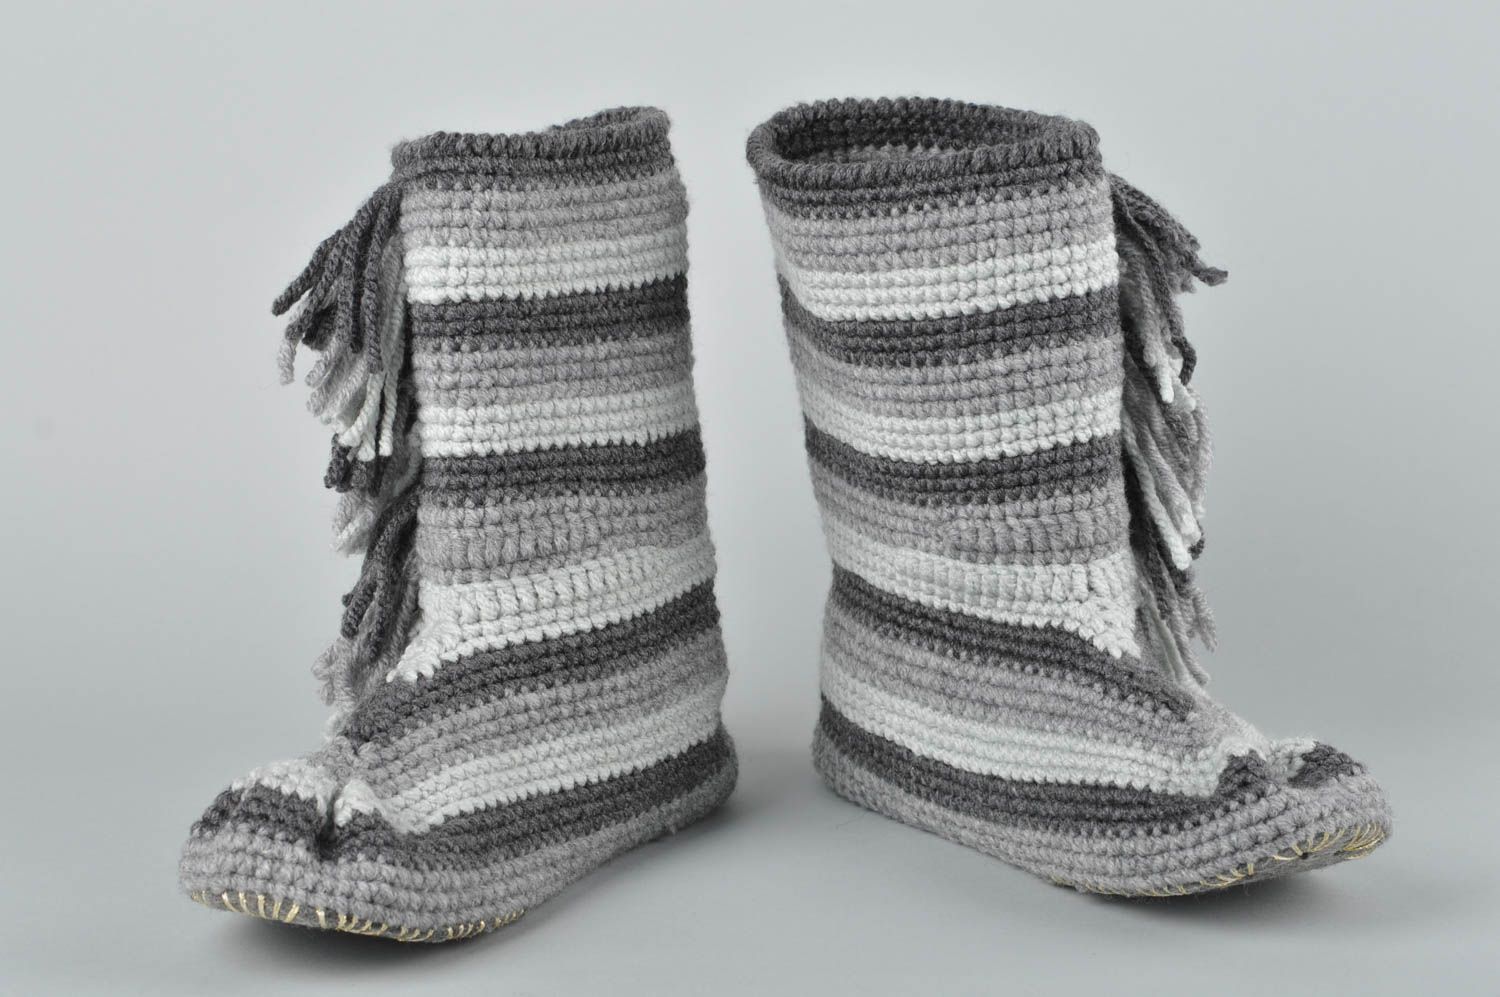 Handmade slippers crochet slippers for men gift ideas for guys house shoes photo 1